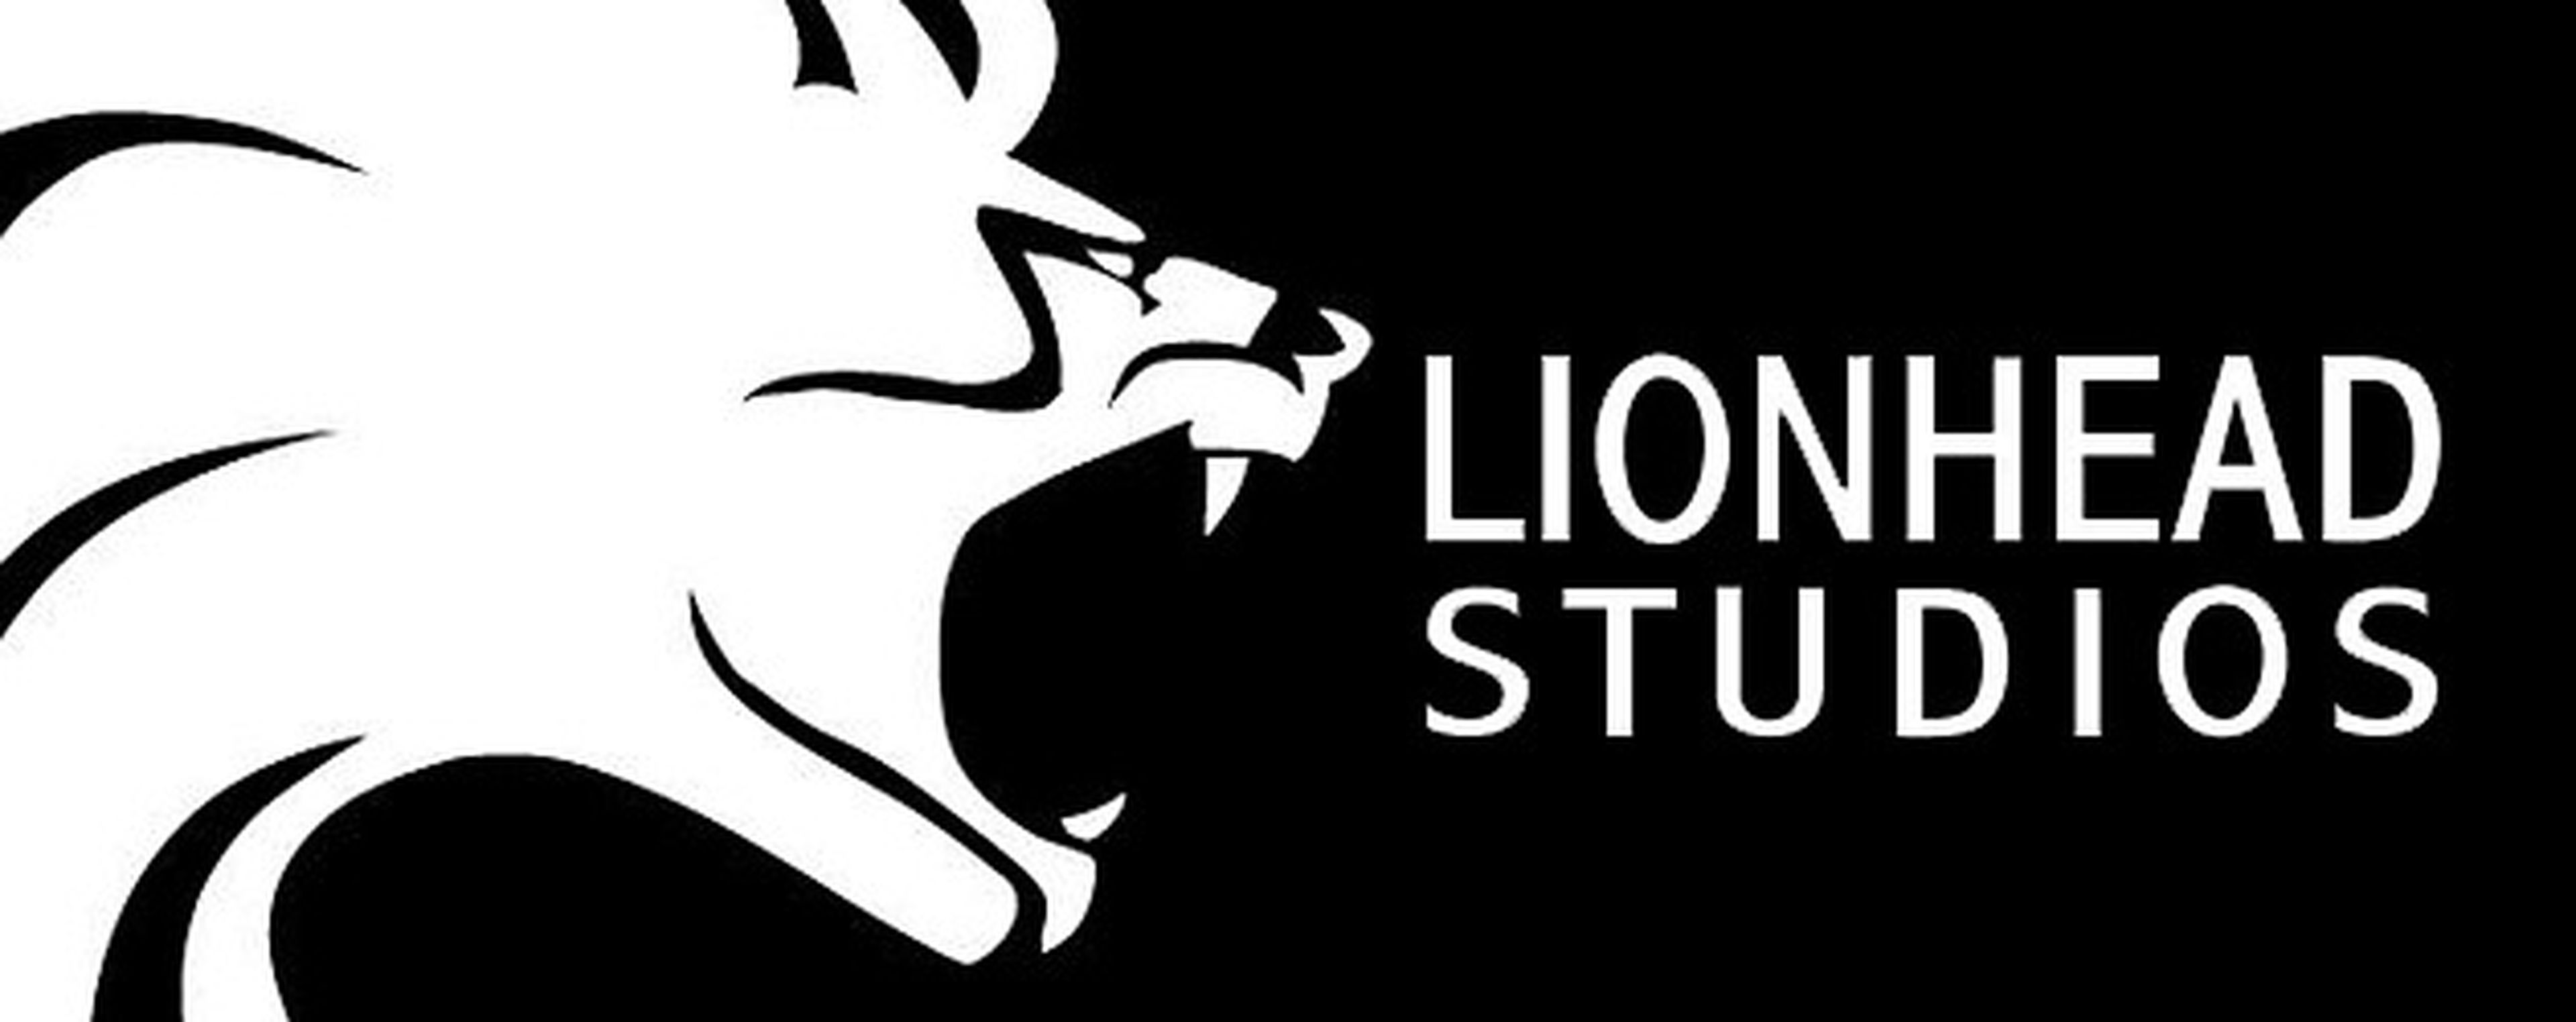 Lionhead Studios - Phil Spencer se pronuncia sobre el cierre del estudio y el futuro de Xbox One